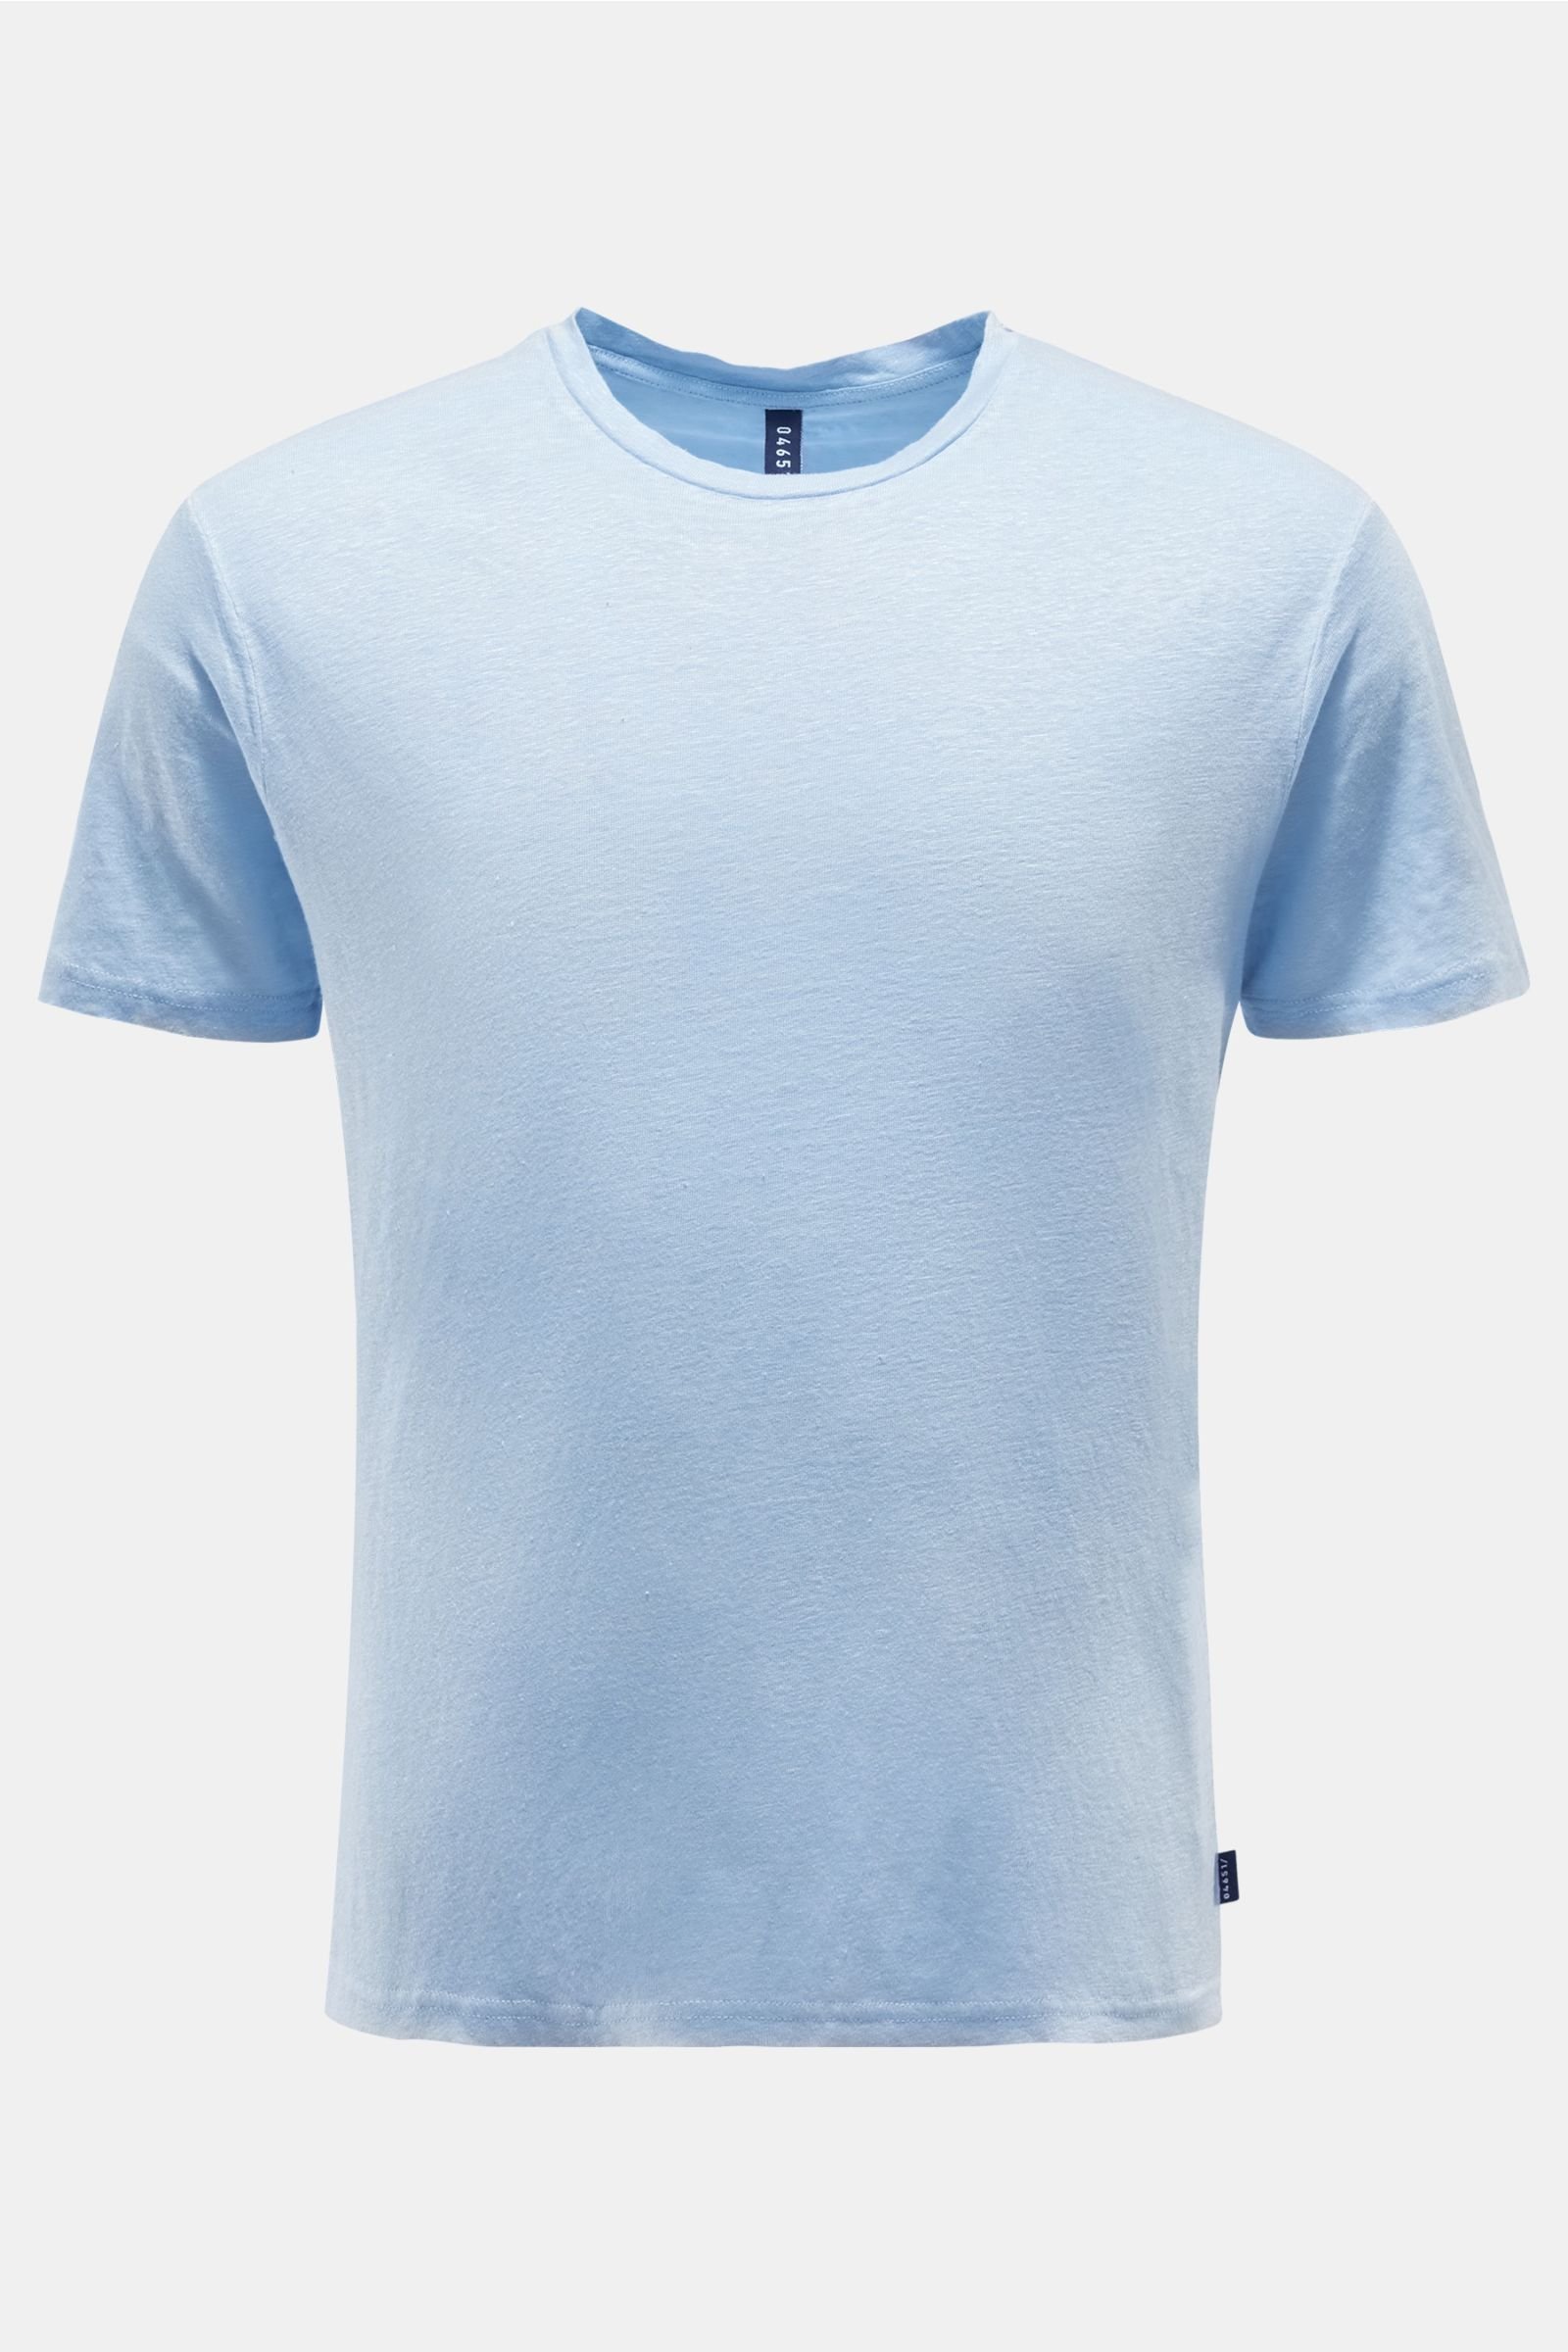 Linen crew neck T-shirt light blue